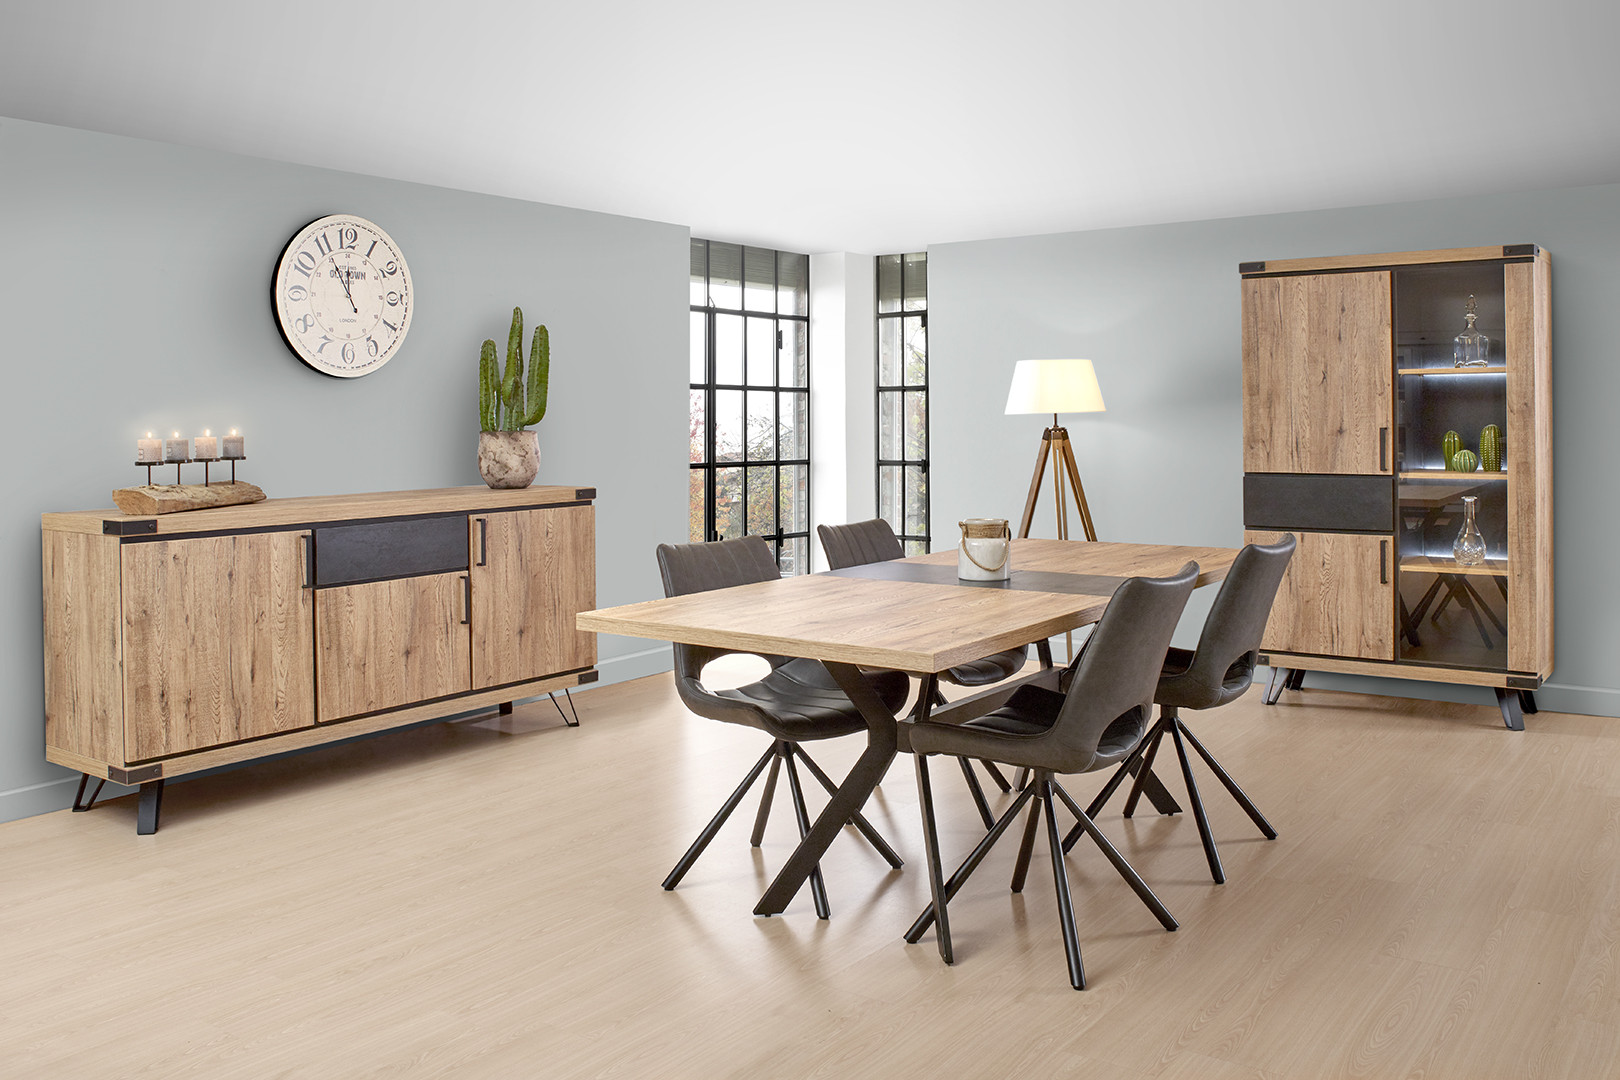 Table salle à manger extensible en bois et métal Teramo design moderne